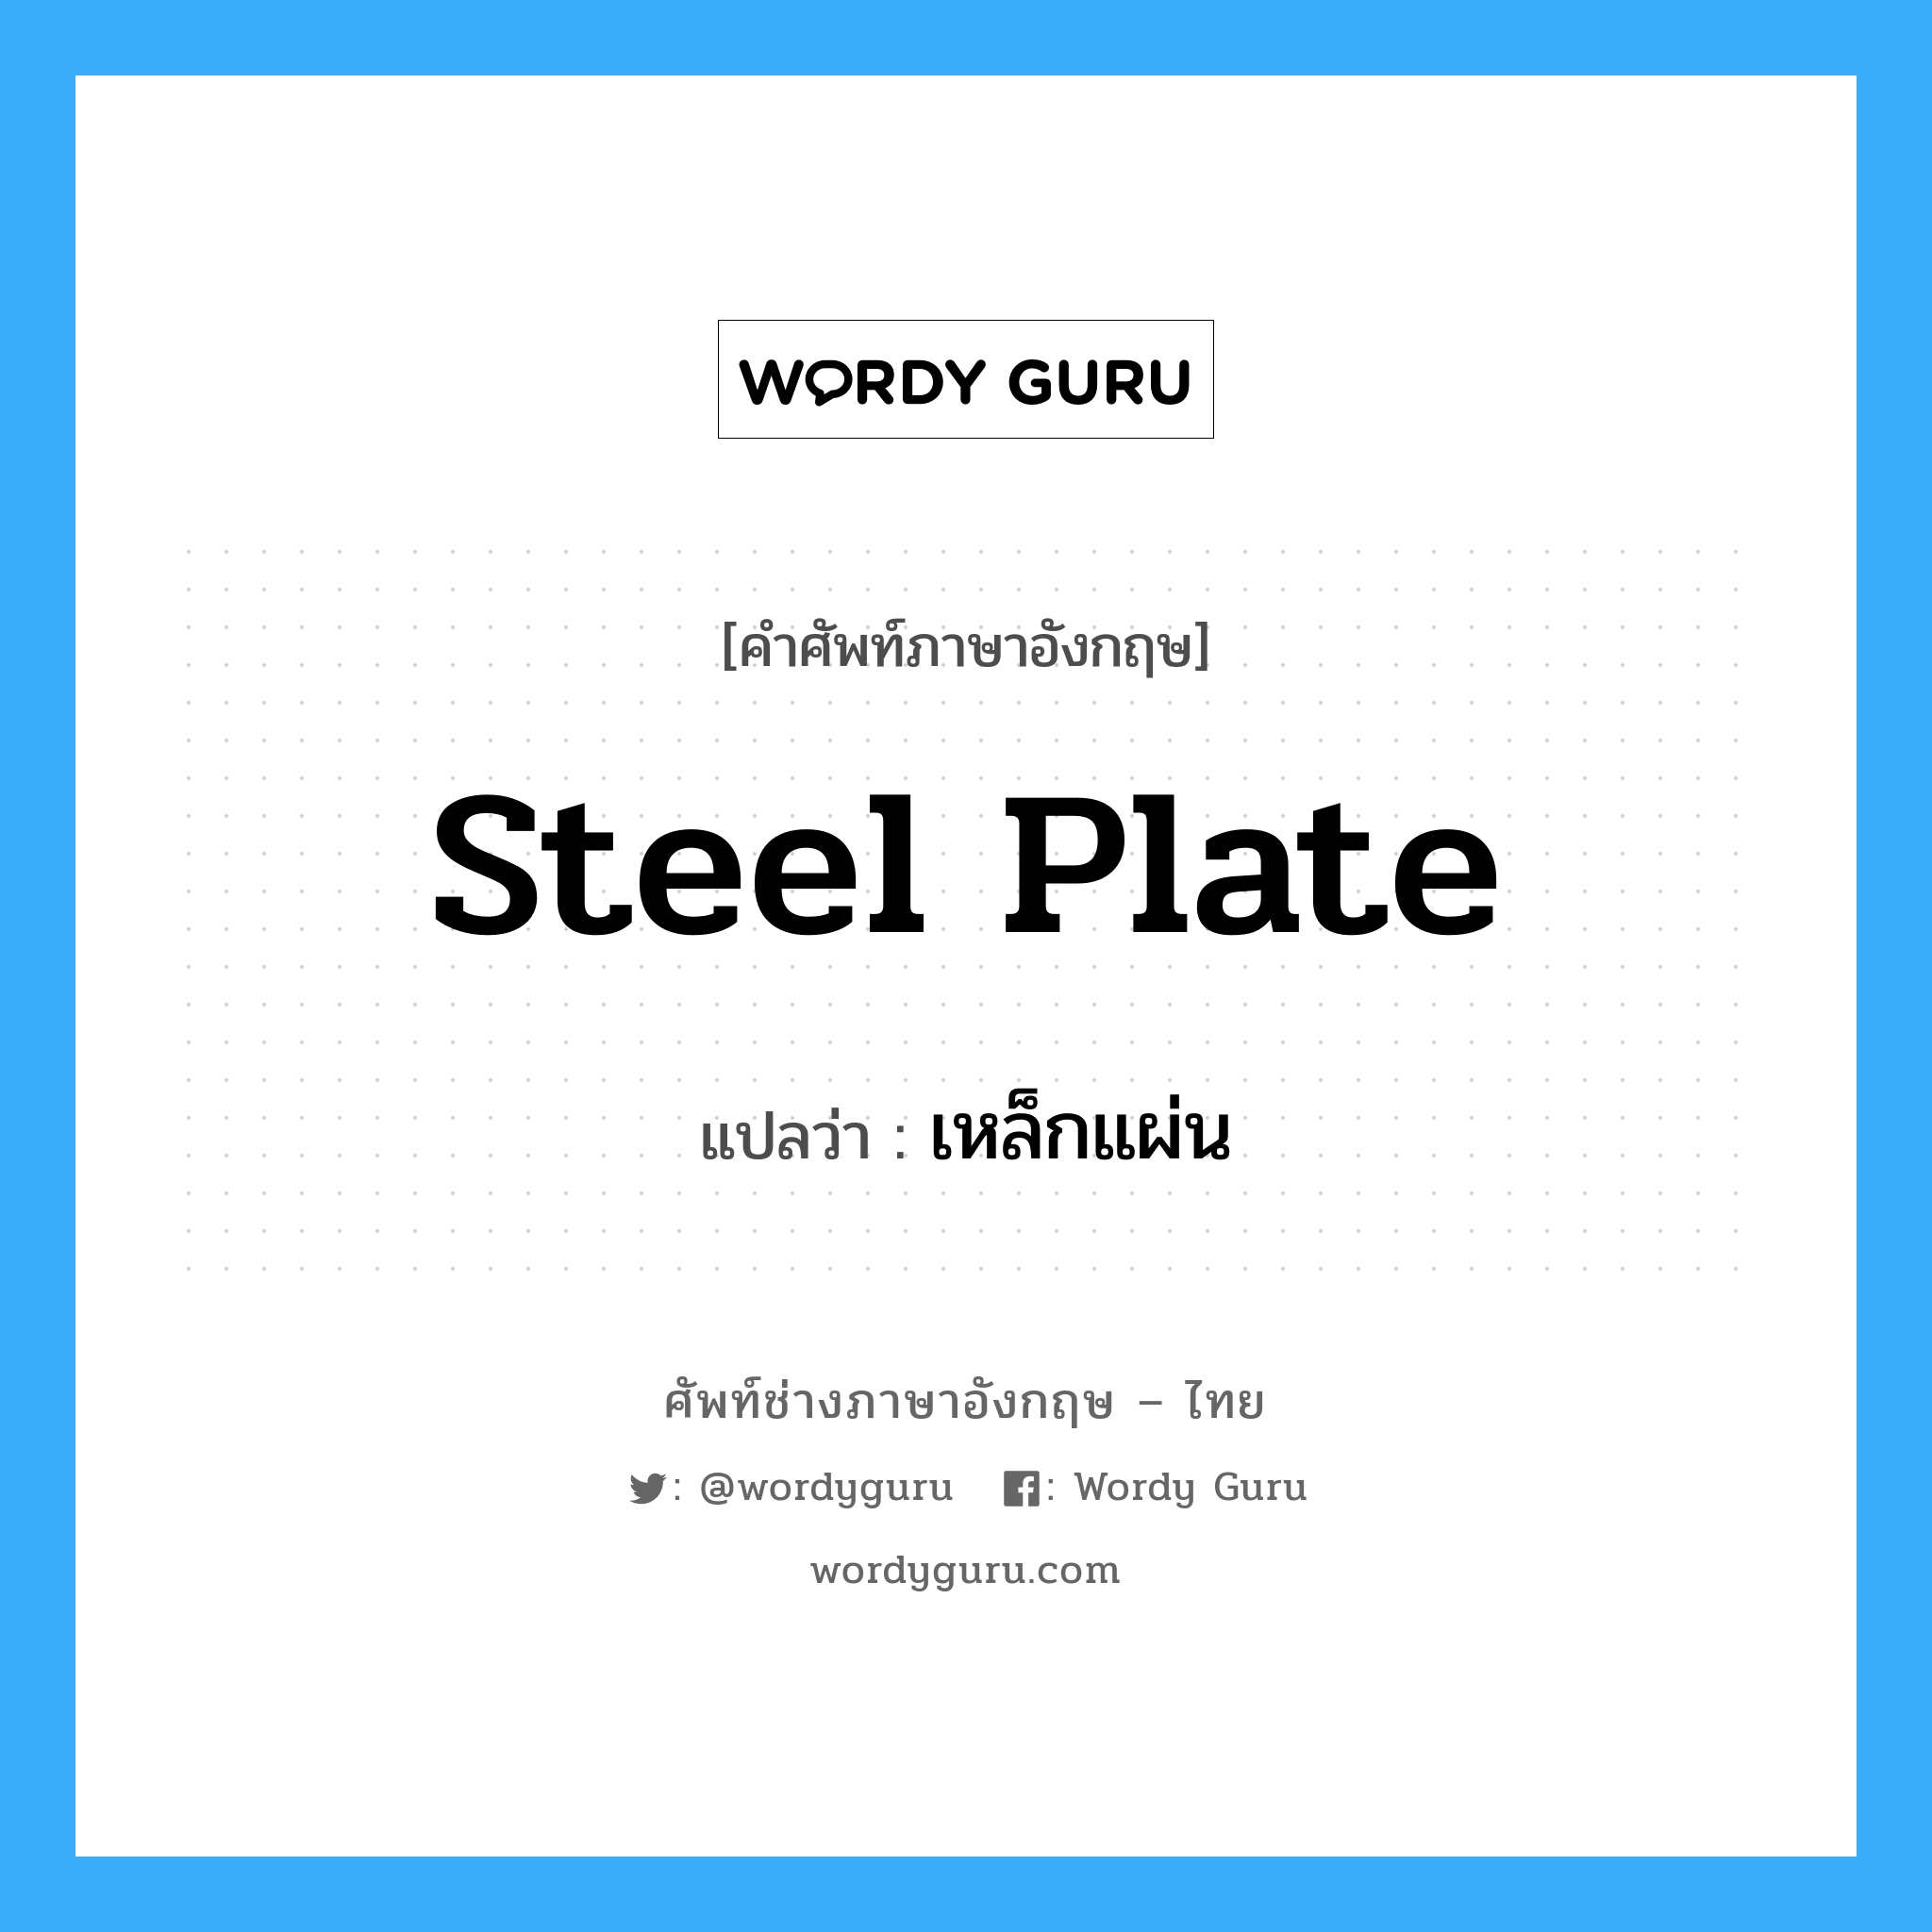 steel plate แปลว่า?, คำศัพท์ช่างภาษาอังกฤษ - ไทย steel plate คำศัพท์ภาษาอังกฤษ steel plate แปลว่า เหล็กแผ่น